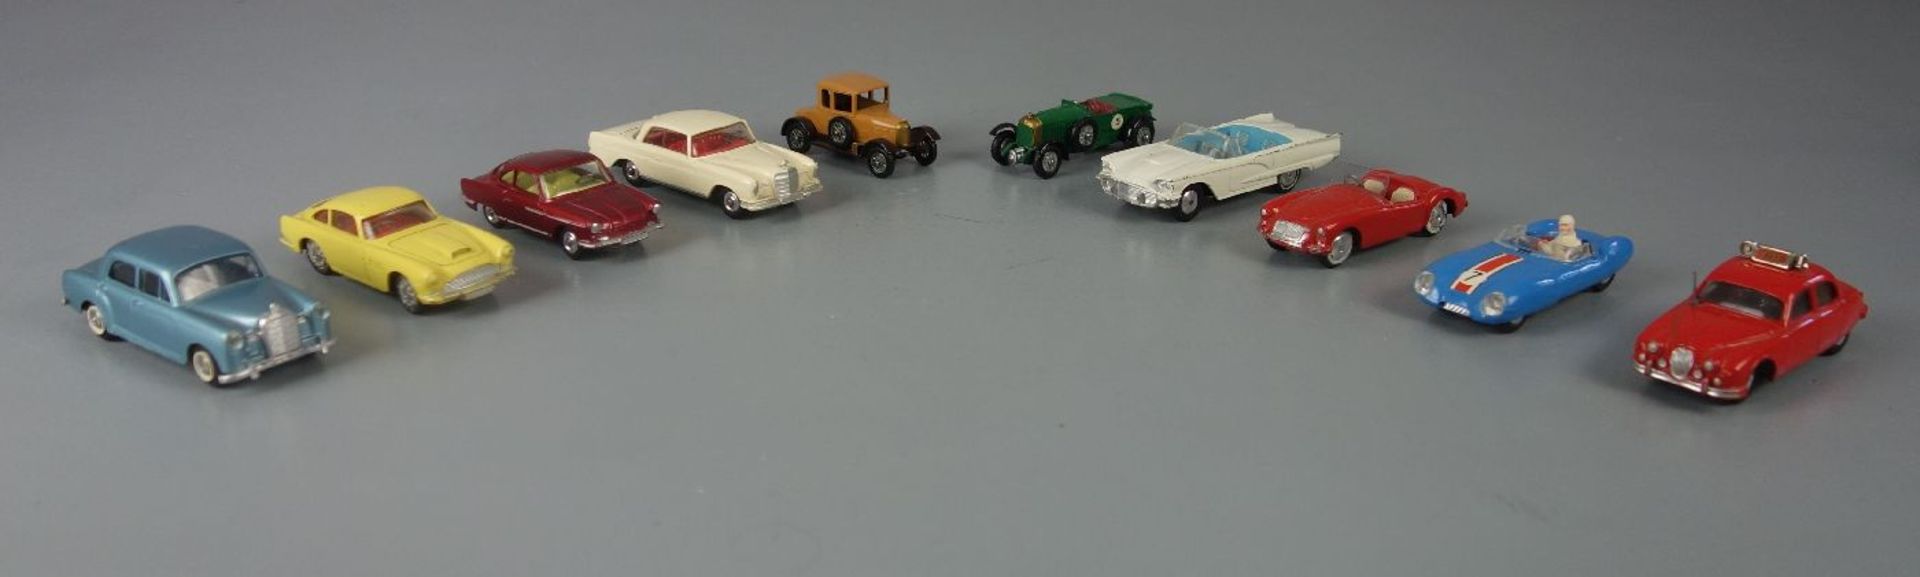 BLECHSPIELZEUG / FAHRZEUGE: Konvolut Autos / Modellfahrzeuge - 10 Stück / tin toy cars, 2. H. 20.